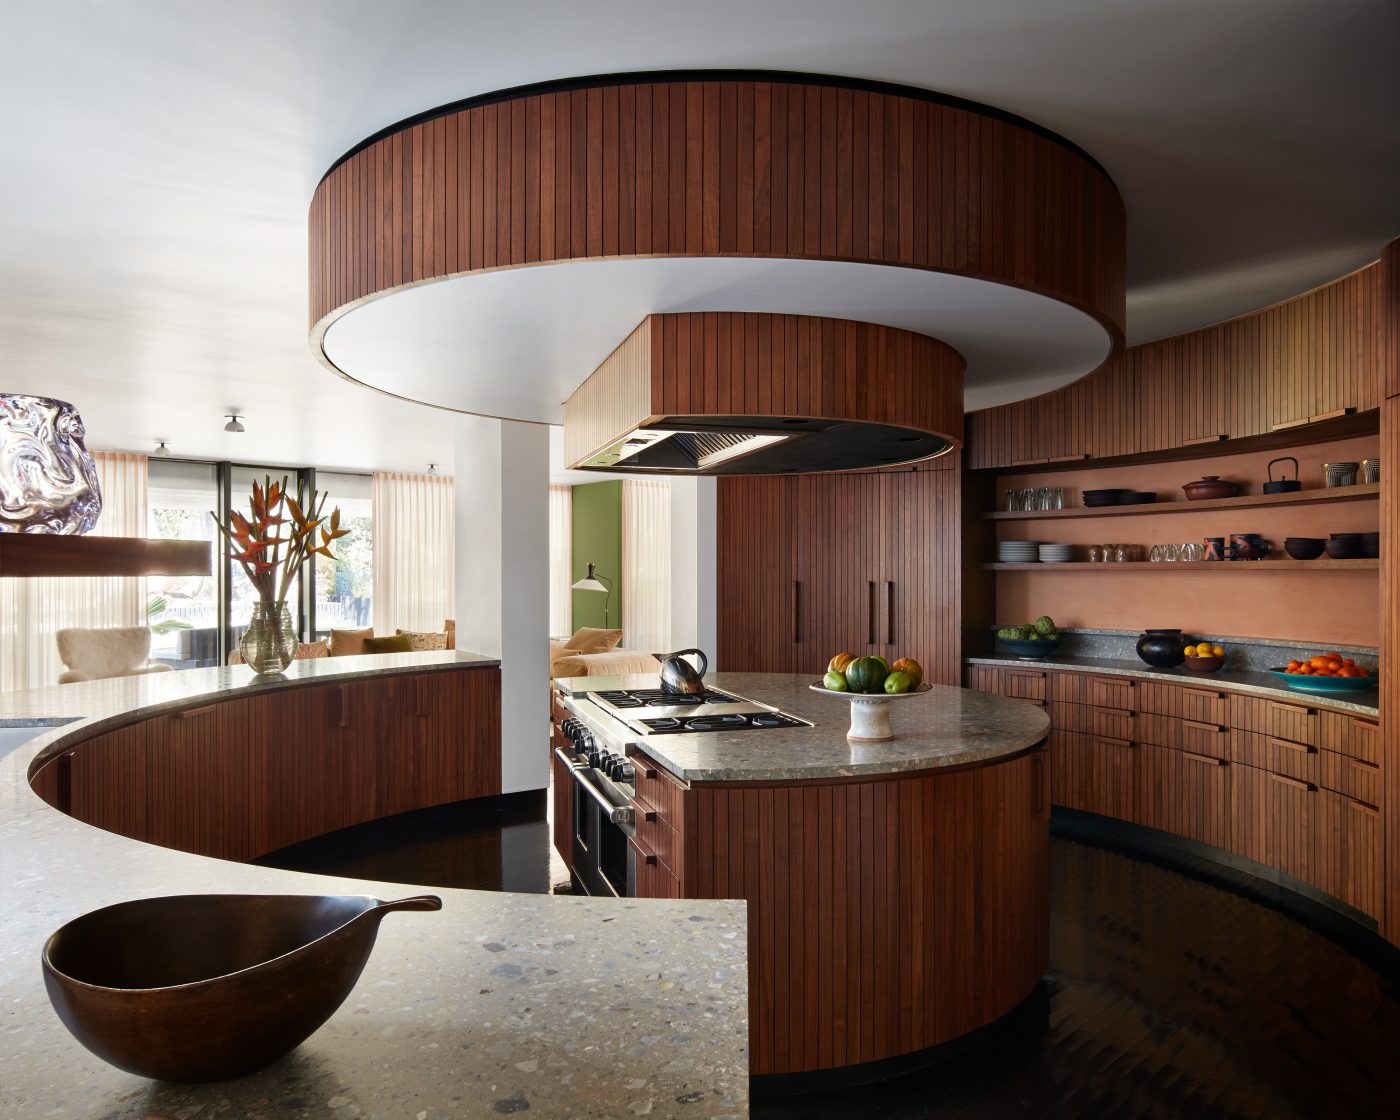 Studio Shamshiri round wood kitchen